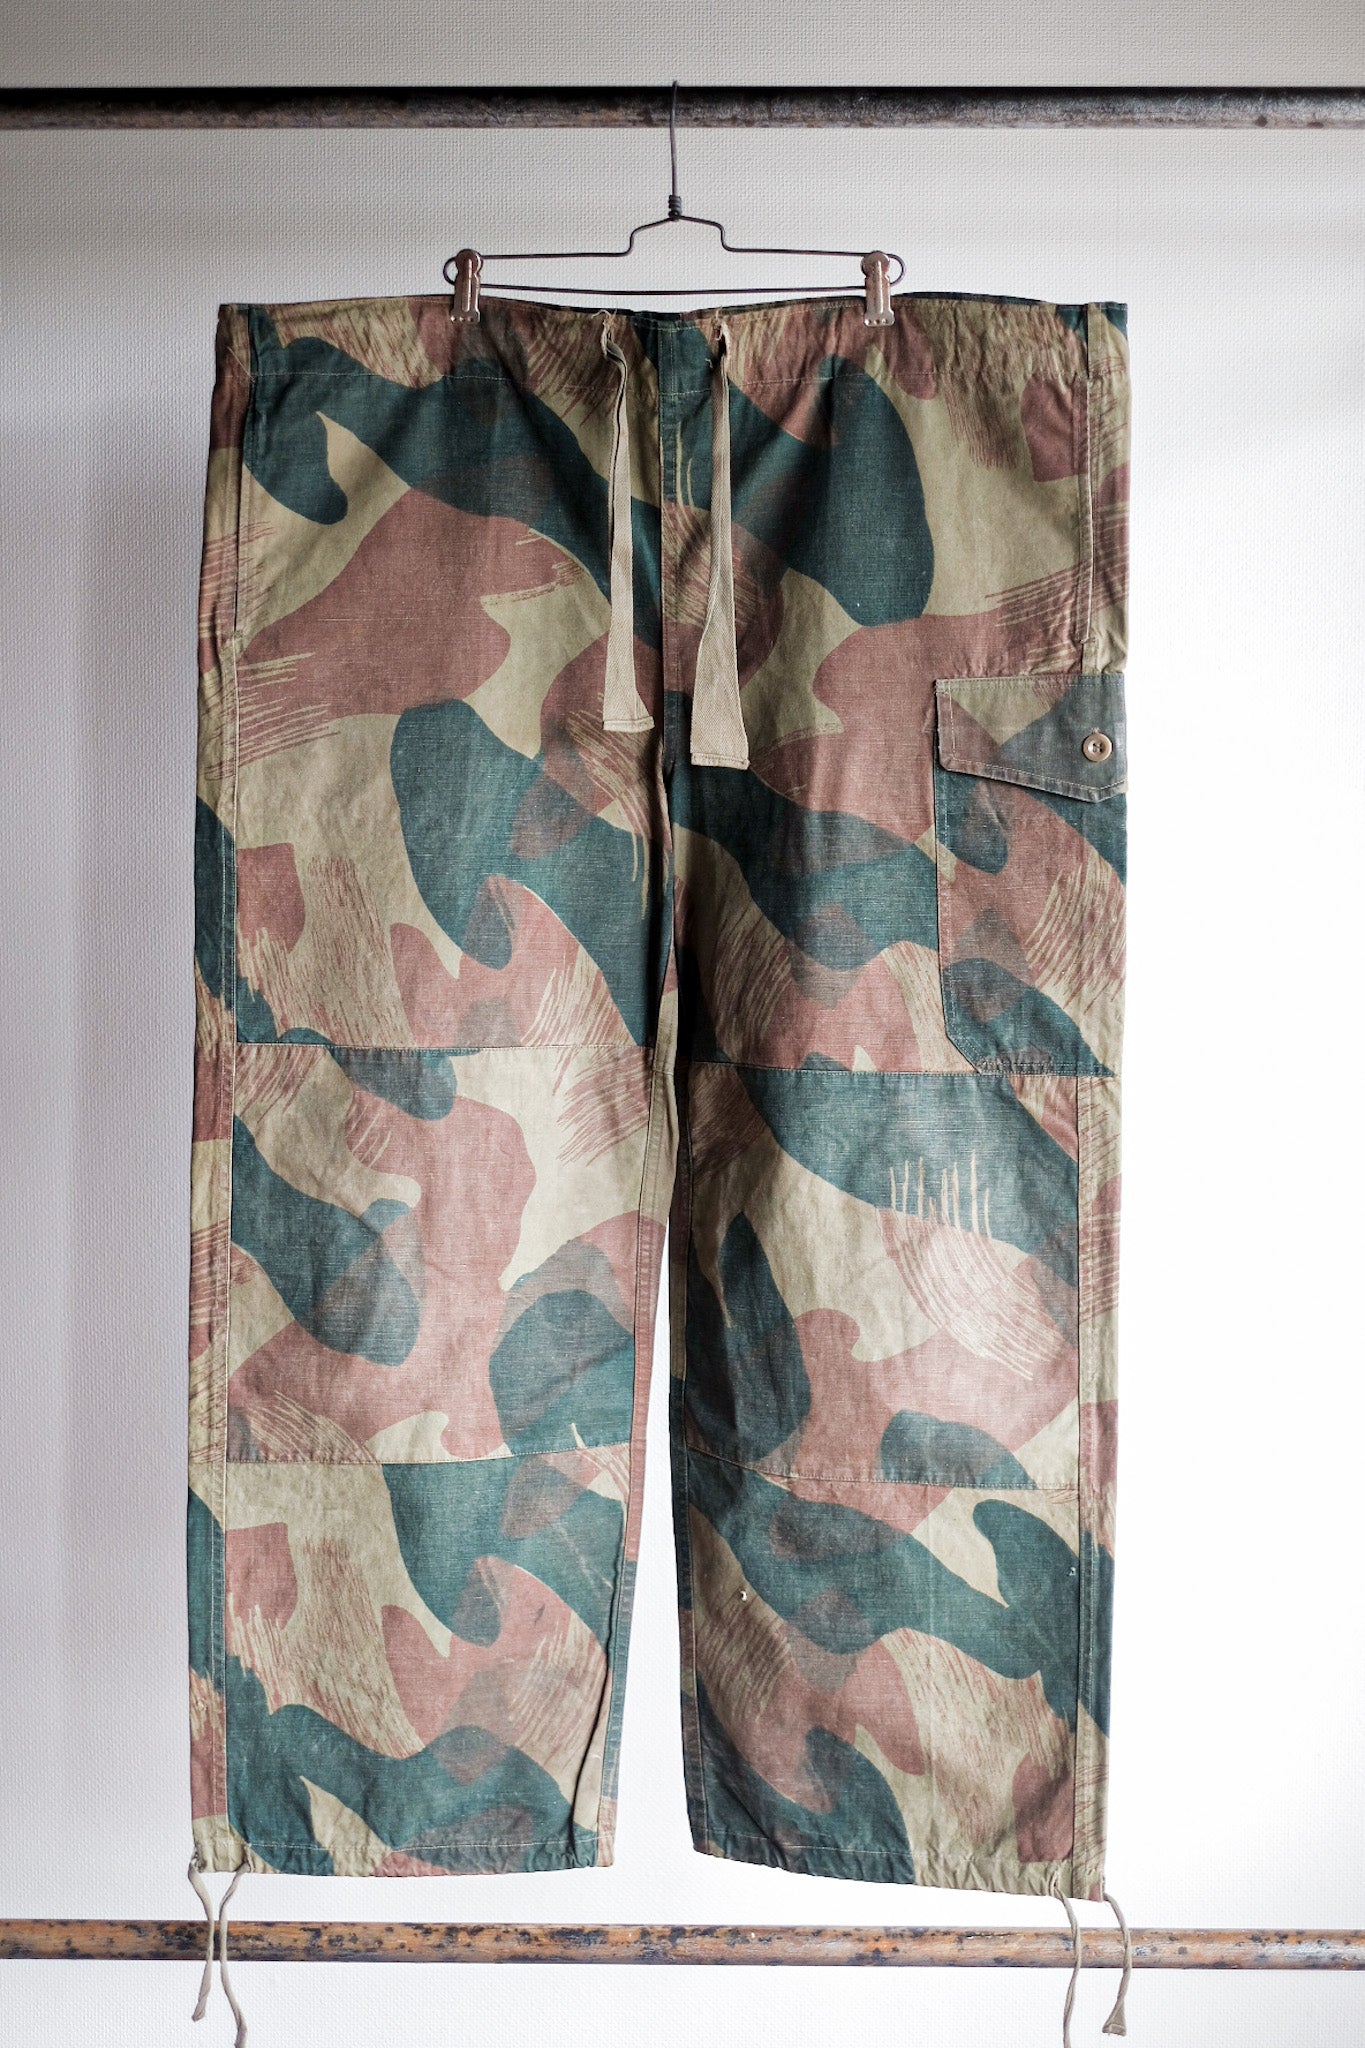 [〜50年代]比利時陸軍筆觸迷彩褲子尺寸。7